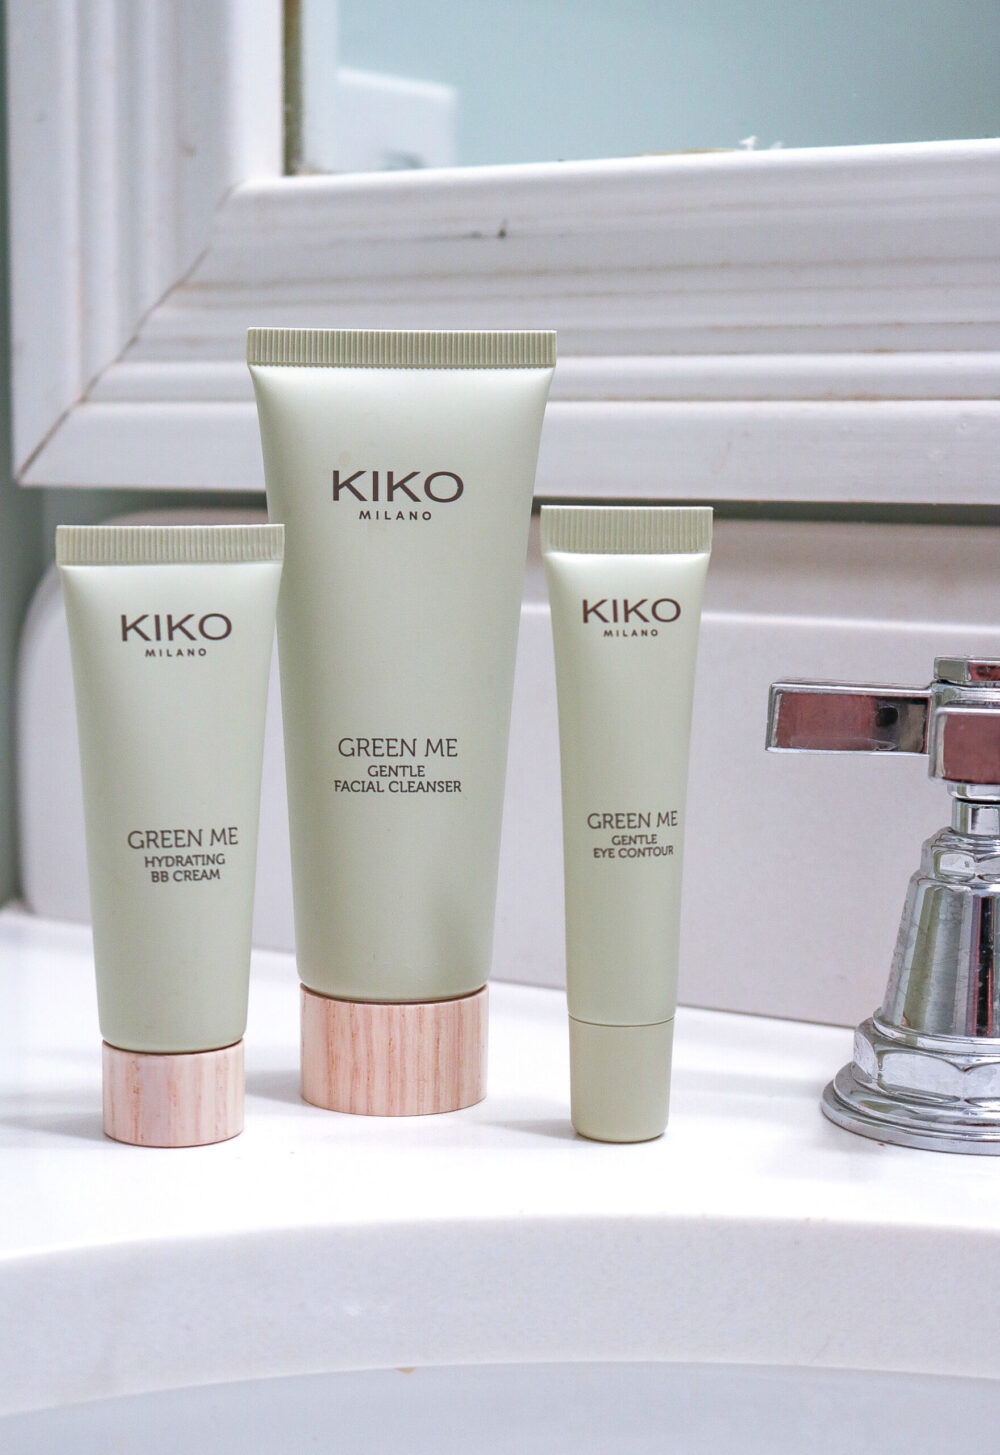 KIKO Eco-Friendly Skincare and Makeup I Green Me Collection #cleanbeauty #veganbeauty #skincare #beautyblog